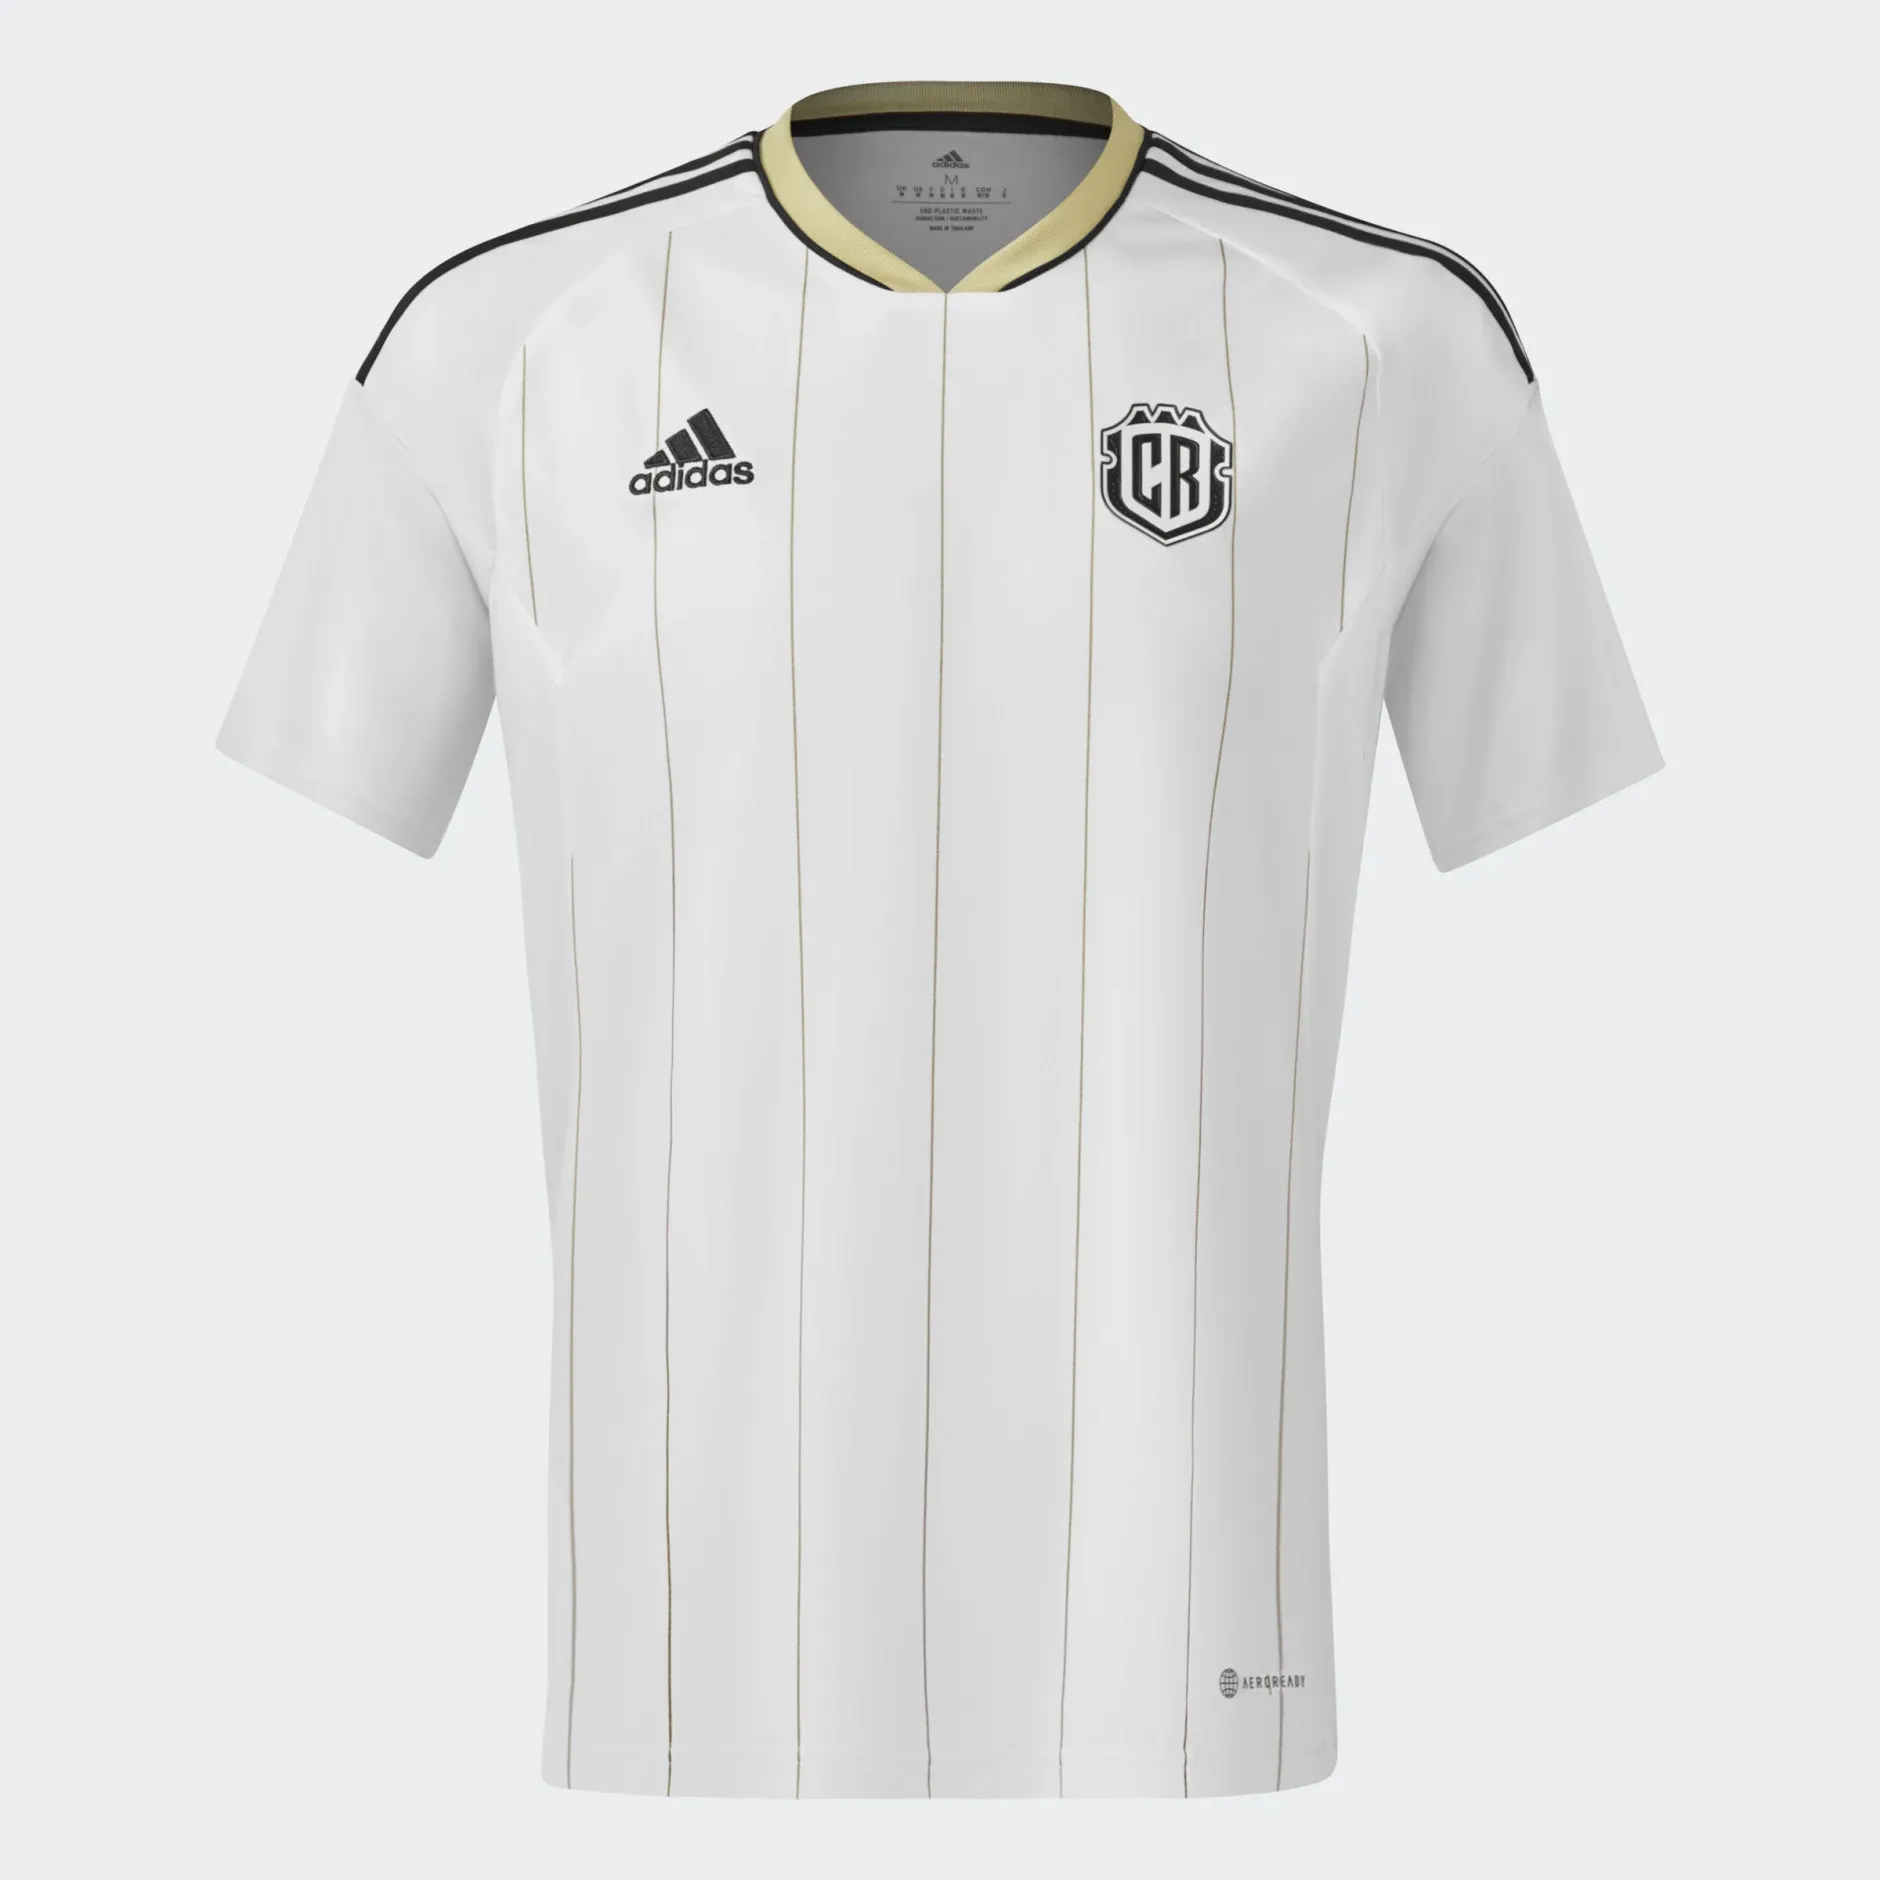 La camiseta de visita que Adidas diseñó para Costa Rica tiene al blanco como protagonista y sobresalen líneas delgadas en dorado, así como los tres ribetes de la marca en negro.